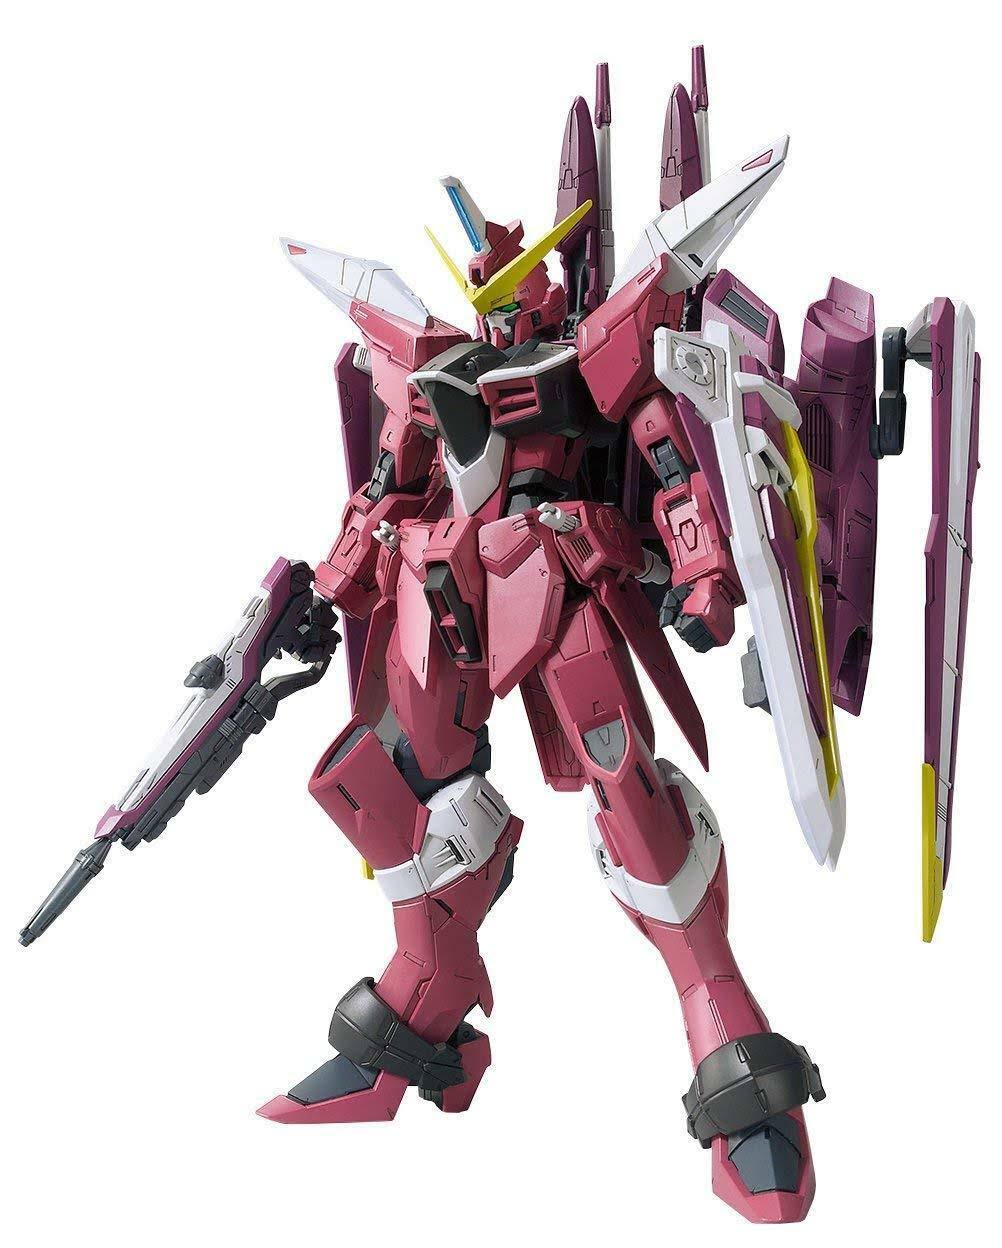 Bandai Hobby Justice Gundam Seed Bandai MG Hobby Action Figure